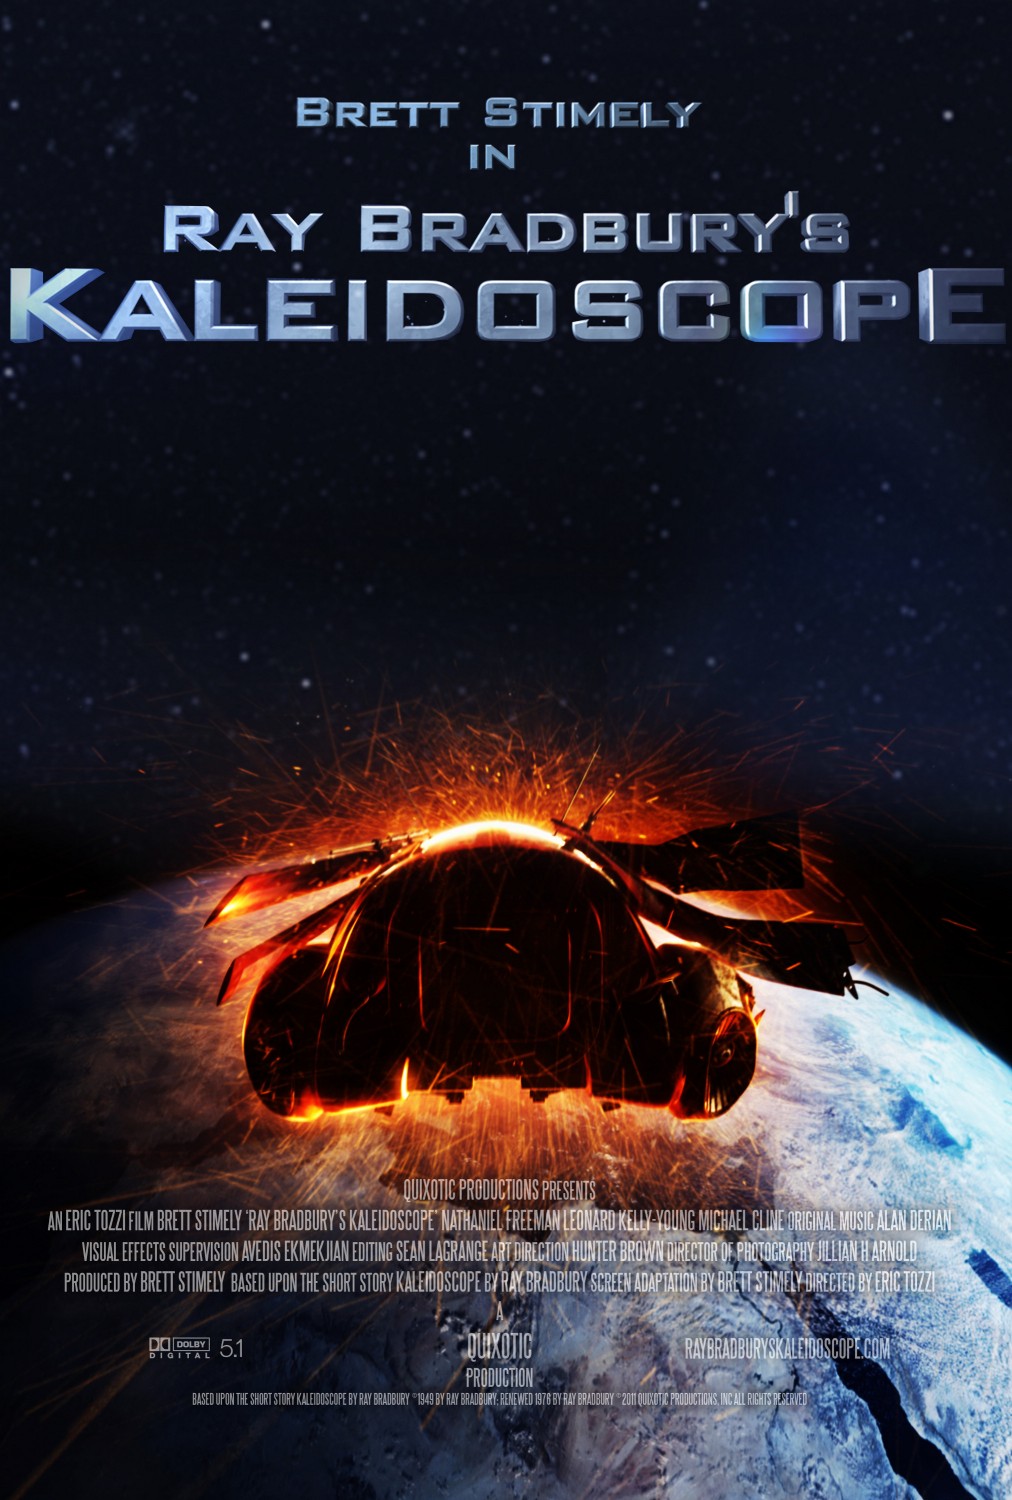 Extra Large Movie Poster Image for Ray Bradbury's Kaleidoscope